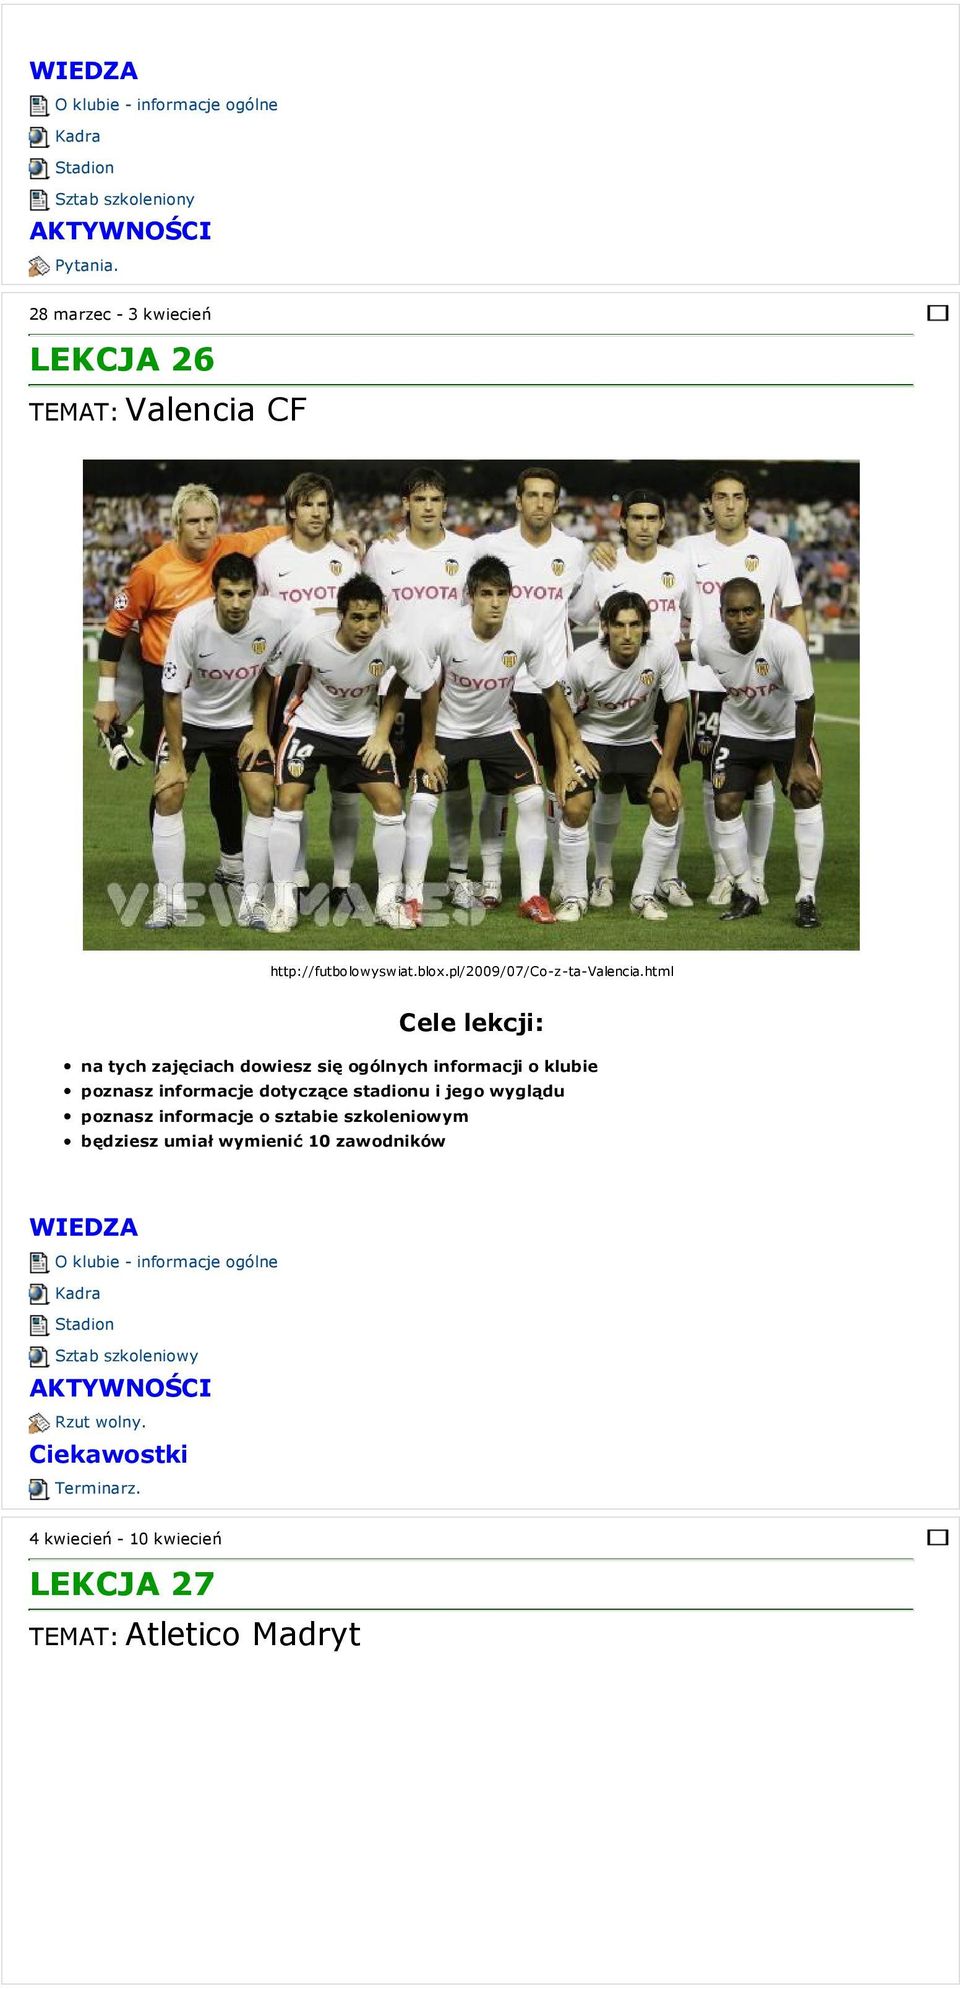 http://futbolowyswiat.blox.pl/2009/07/co-z-ta-valencia.